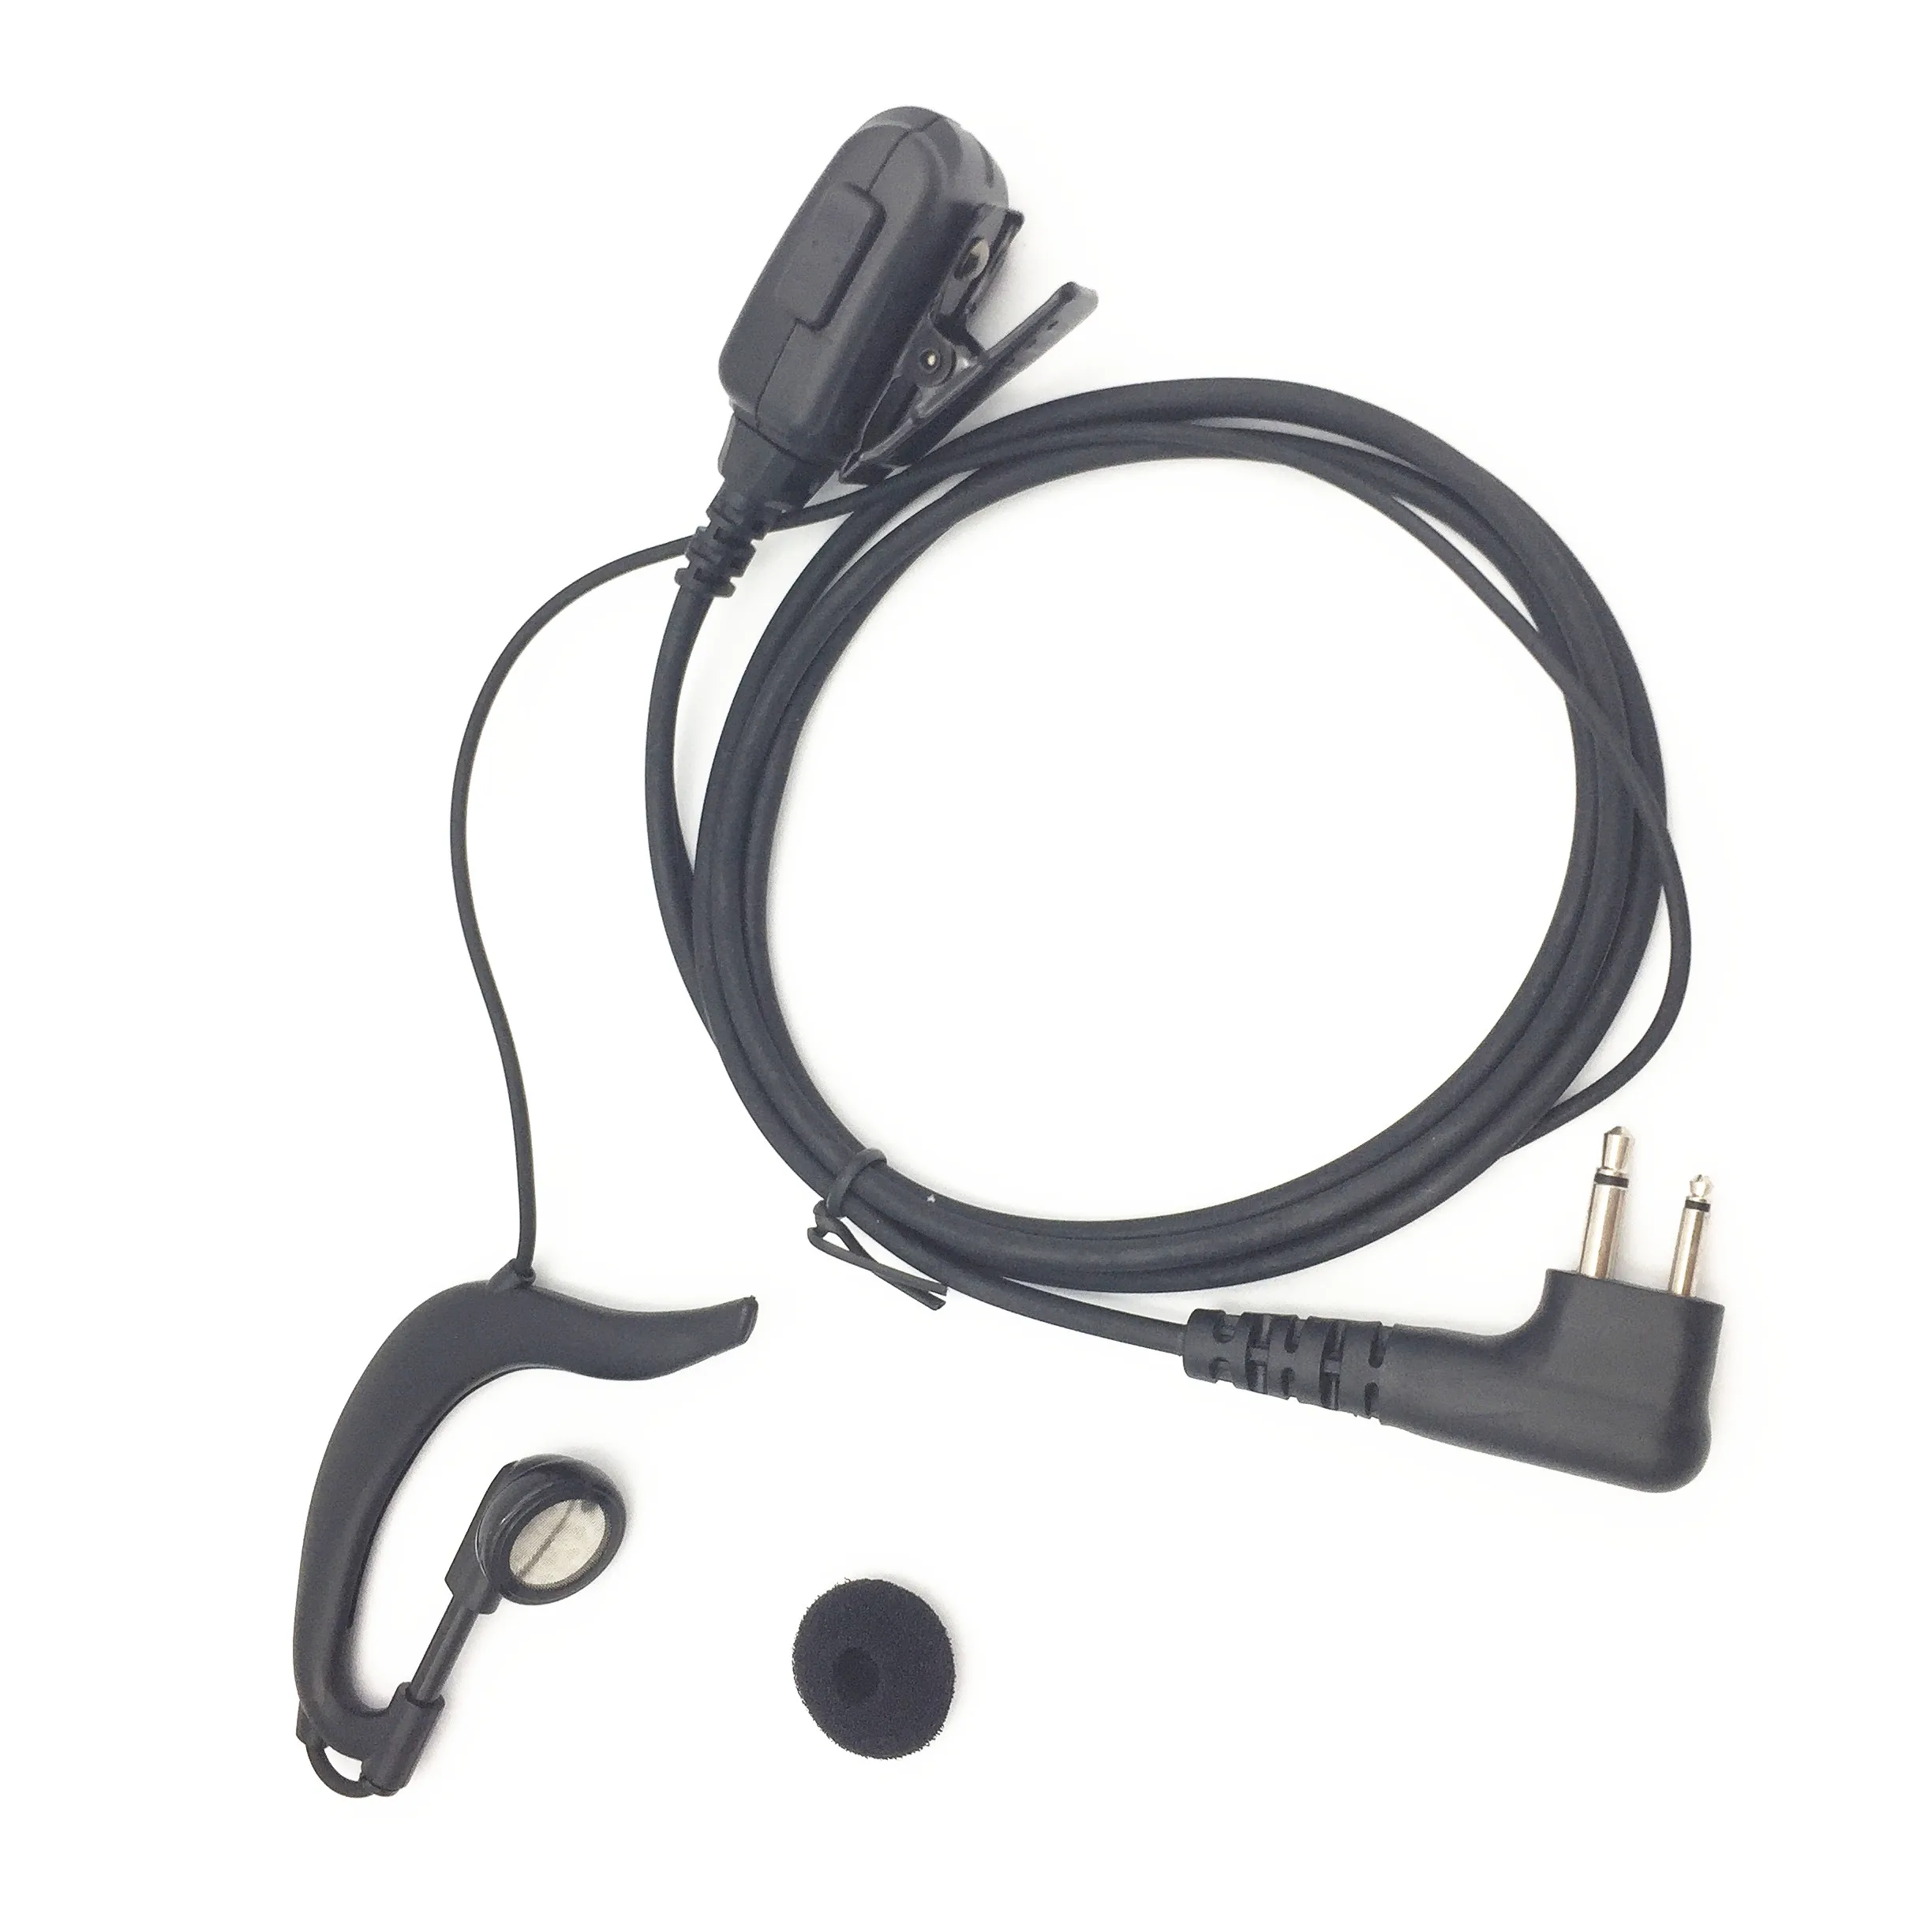 RISENKE cheap earhook earpiece M head for motorola walkie talkie headset headphone hidden earphone 2 way radio 2 wire 2 pins - ANKUX Tech Co., Ltd